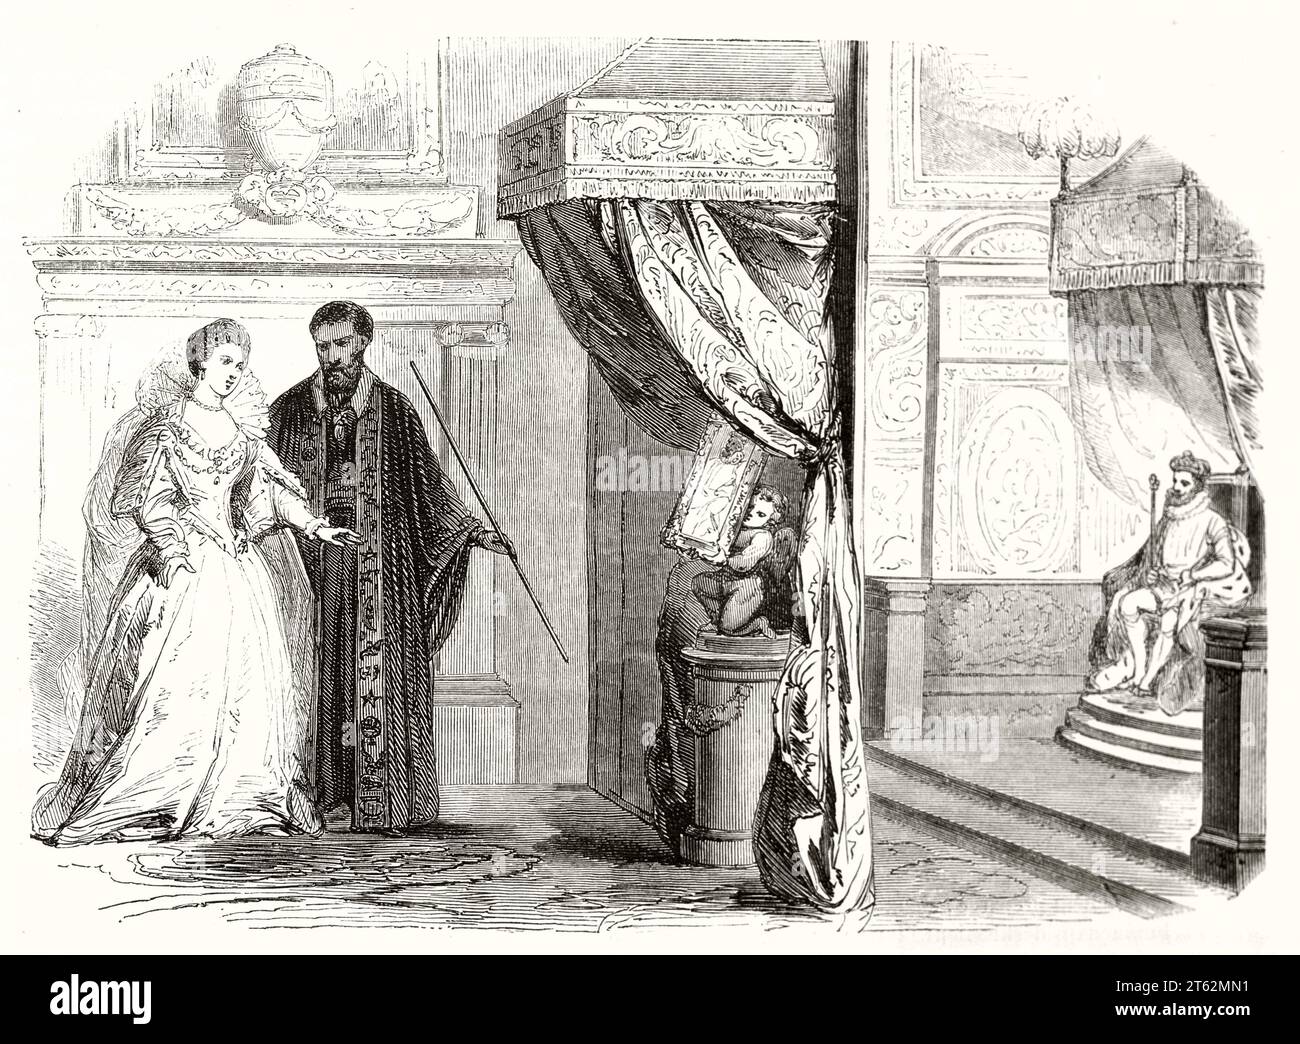 Vieille illustration de Catherine de Médicis et Nostradamus parlant. Par Pauquet, publ. Sur magasin pittoresque, Paris, 1849 Banque D'Images